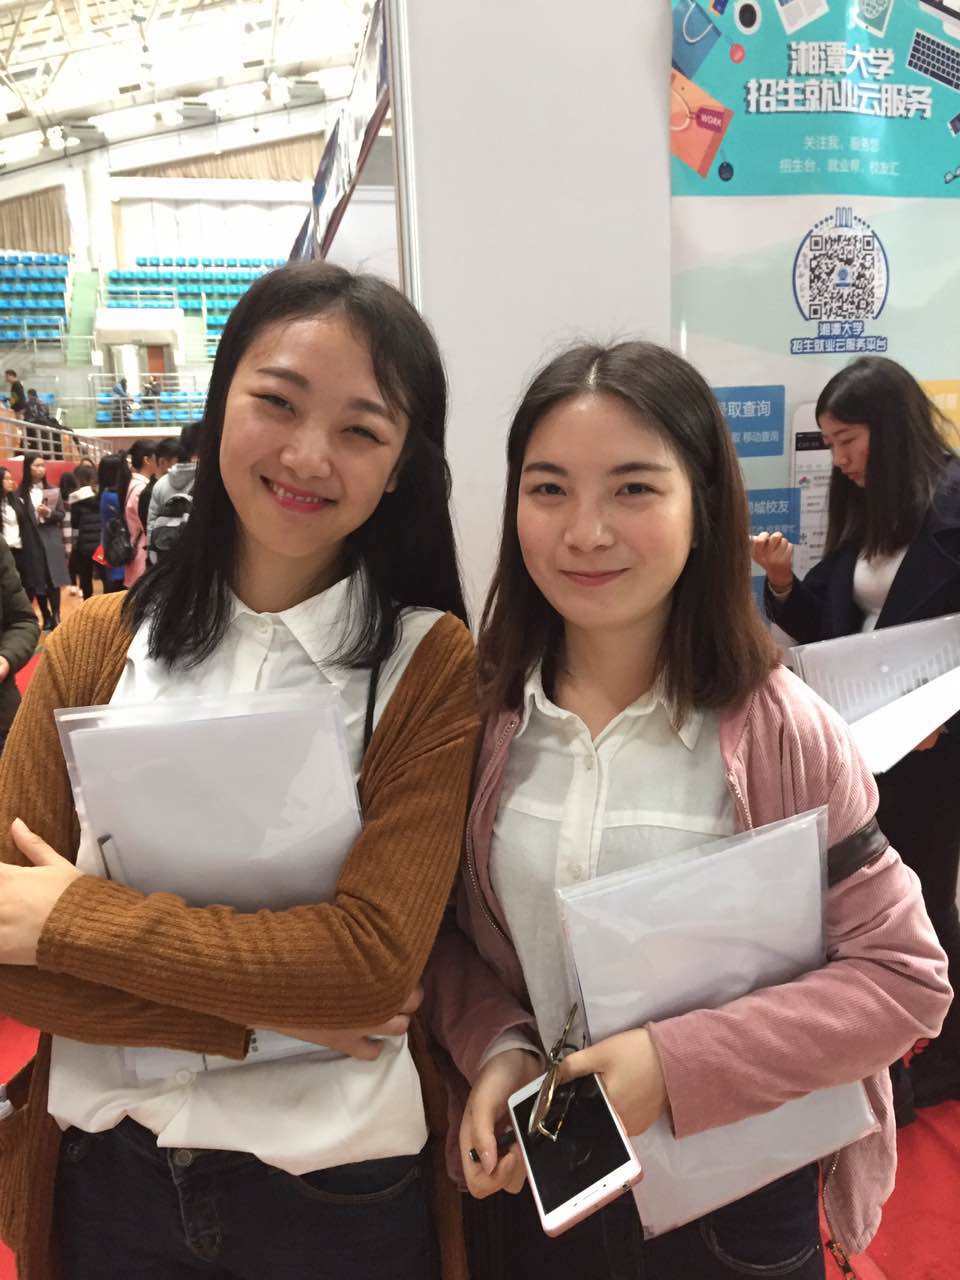 Huijian Group entered Xiangtan University for recruitment